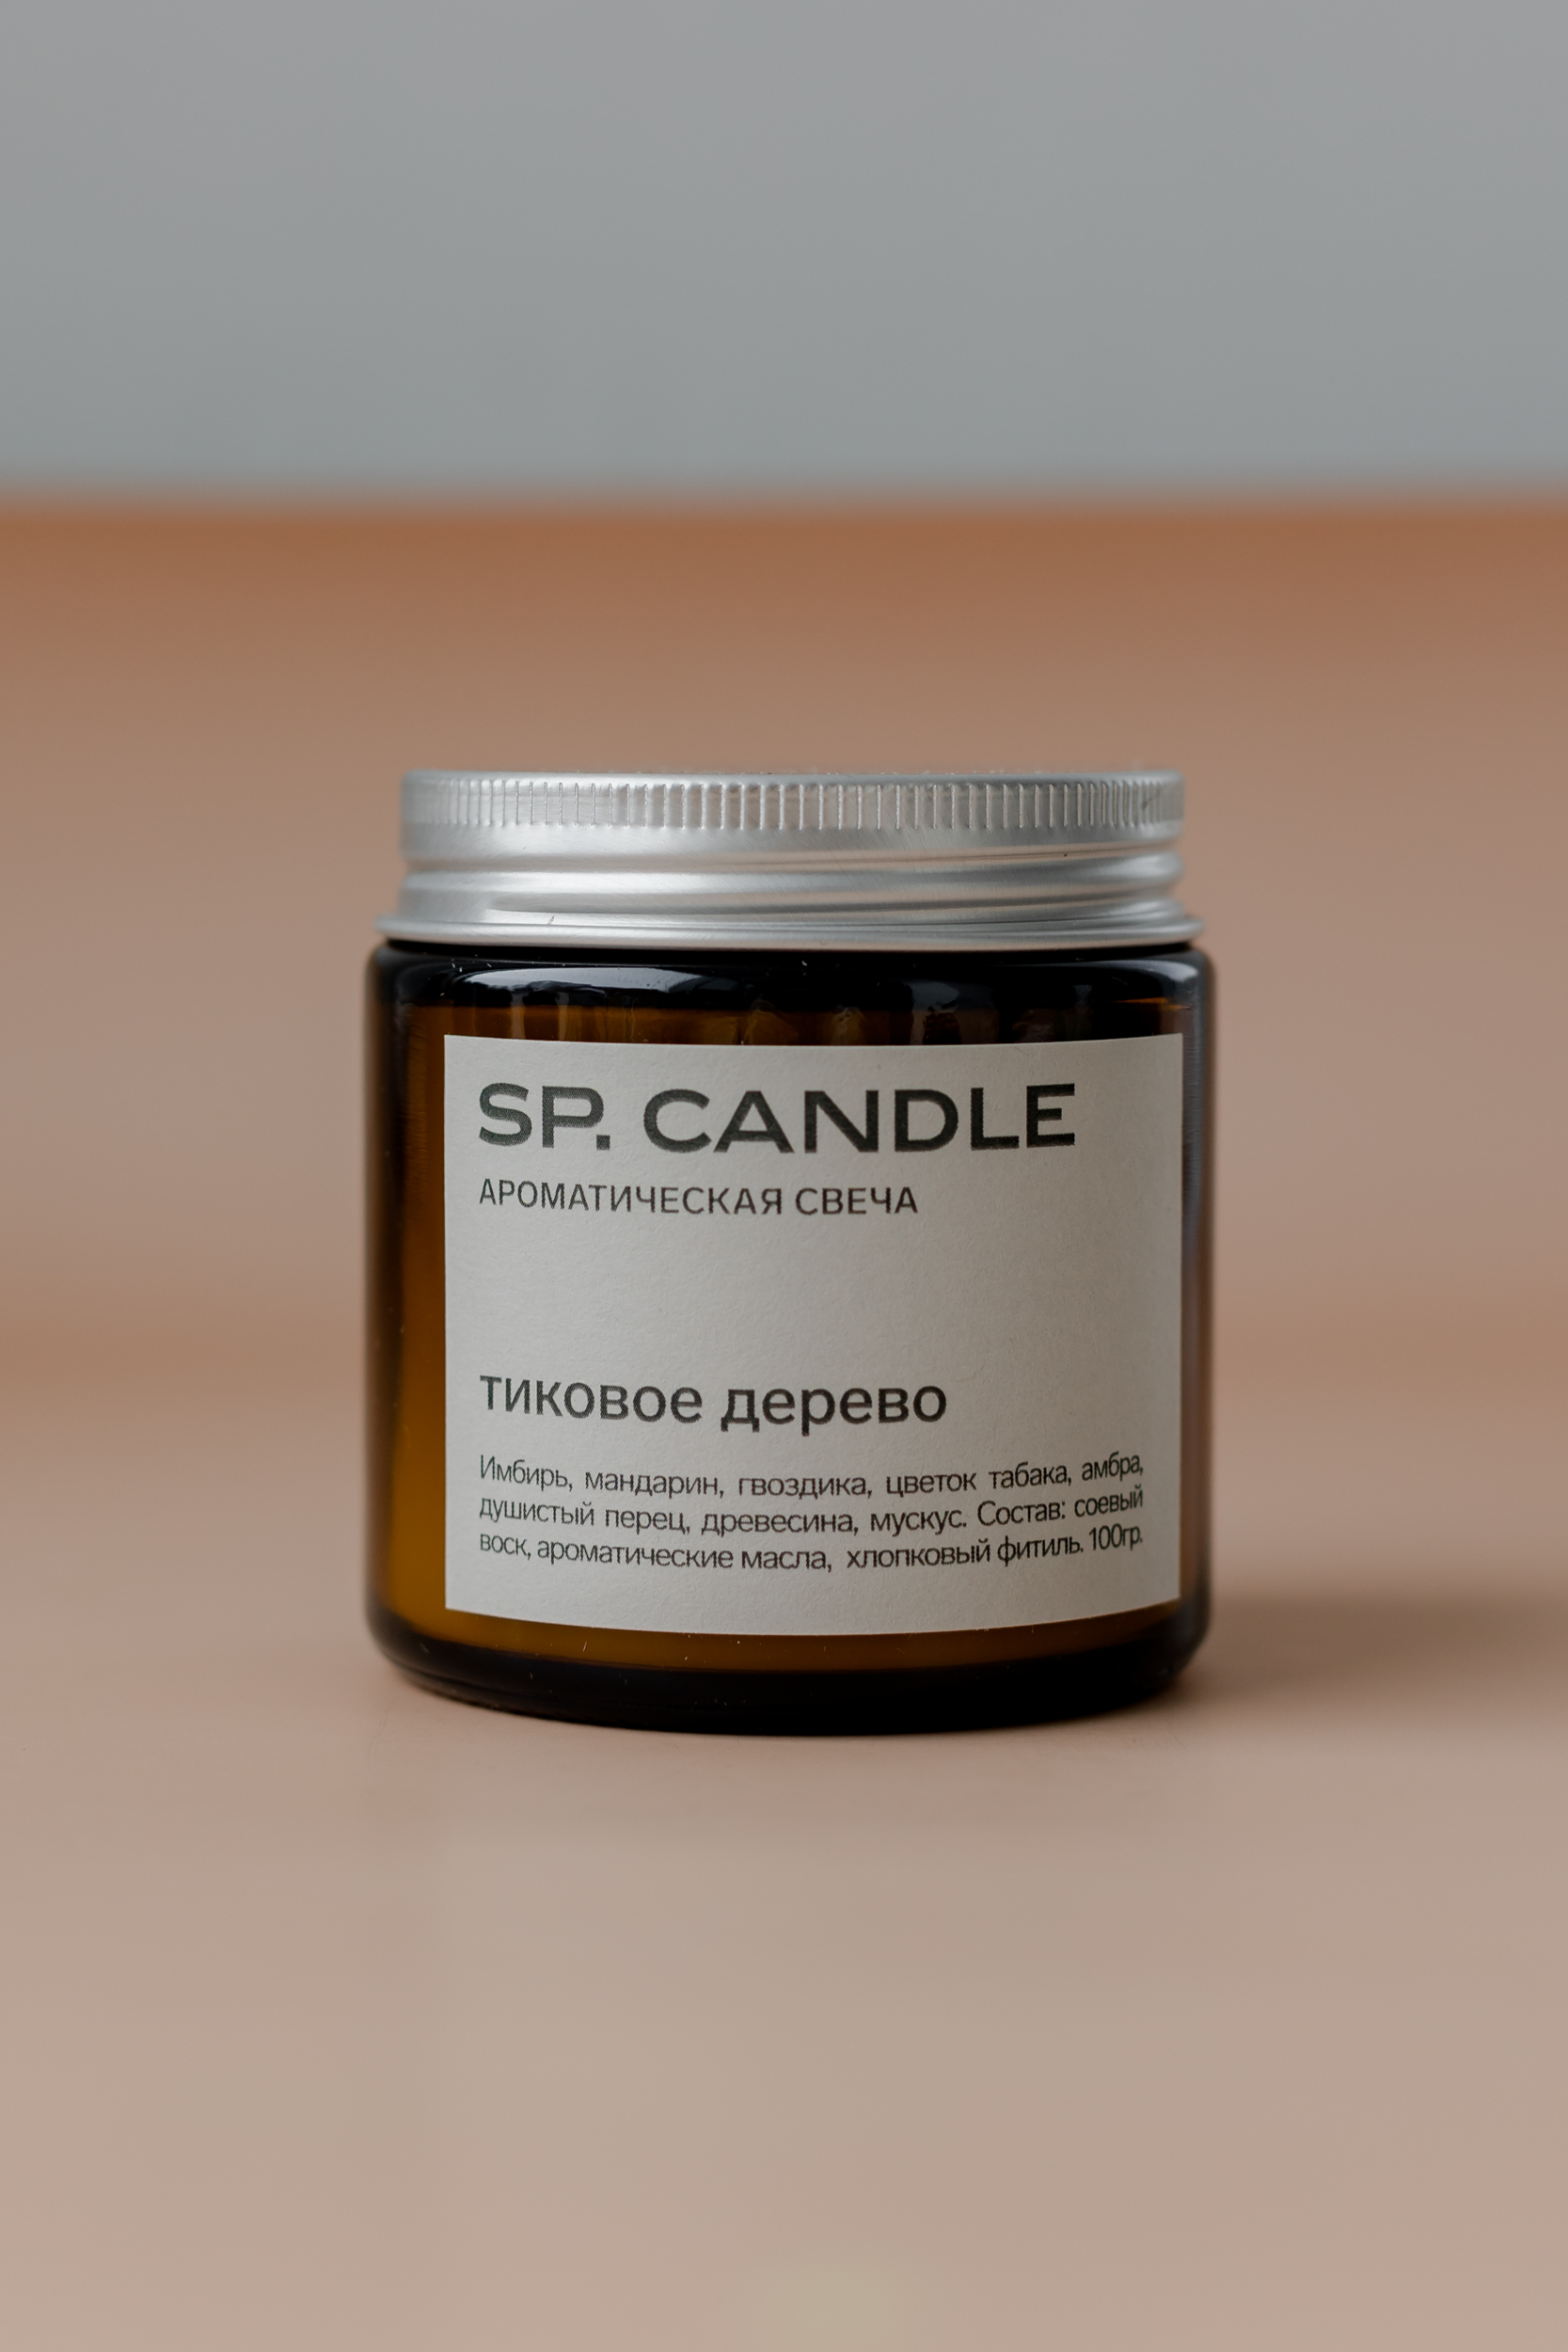 SP. CANDLE Ароматическая свеча Тиковое дерево, 100г